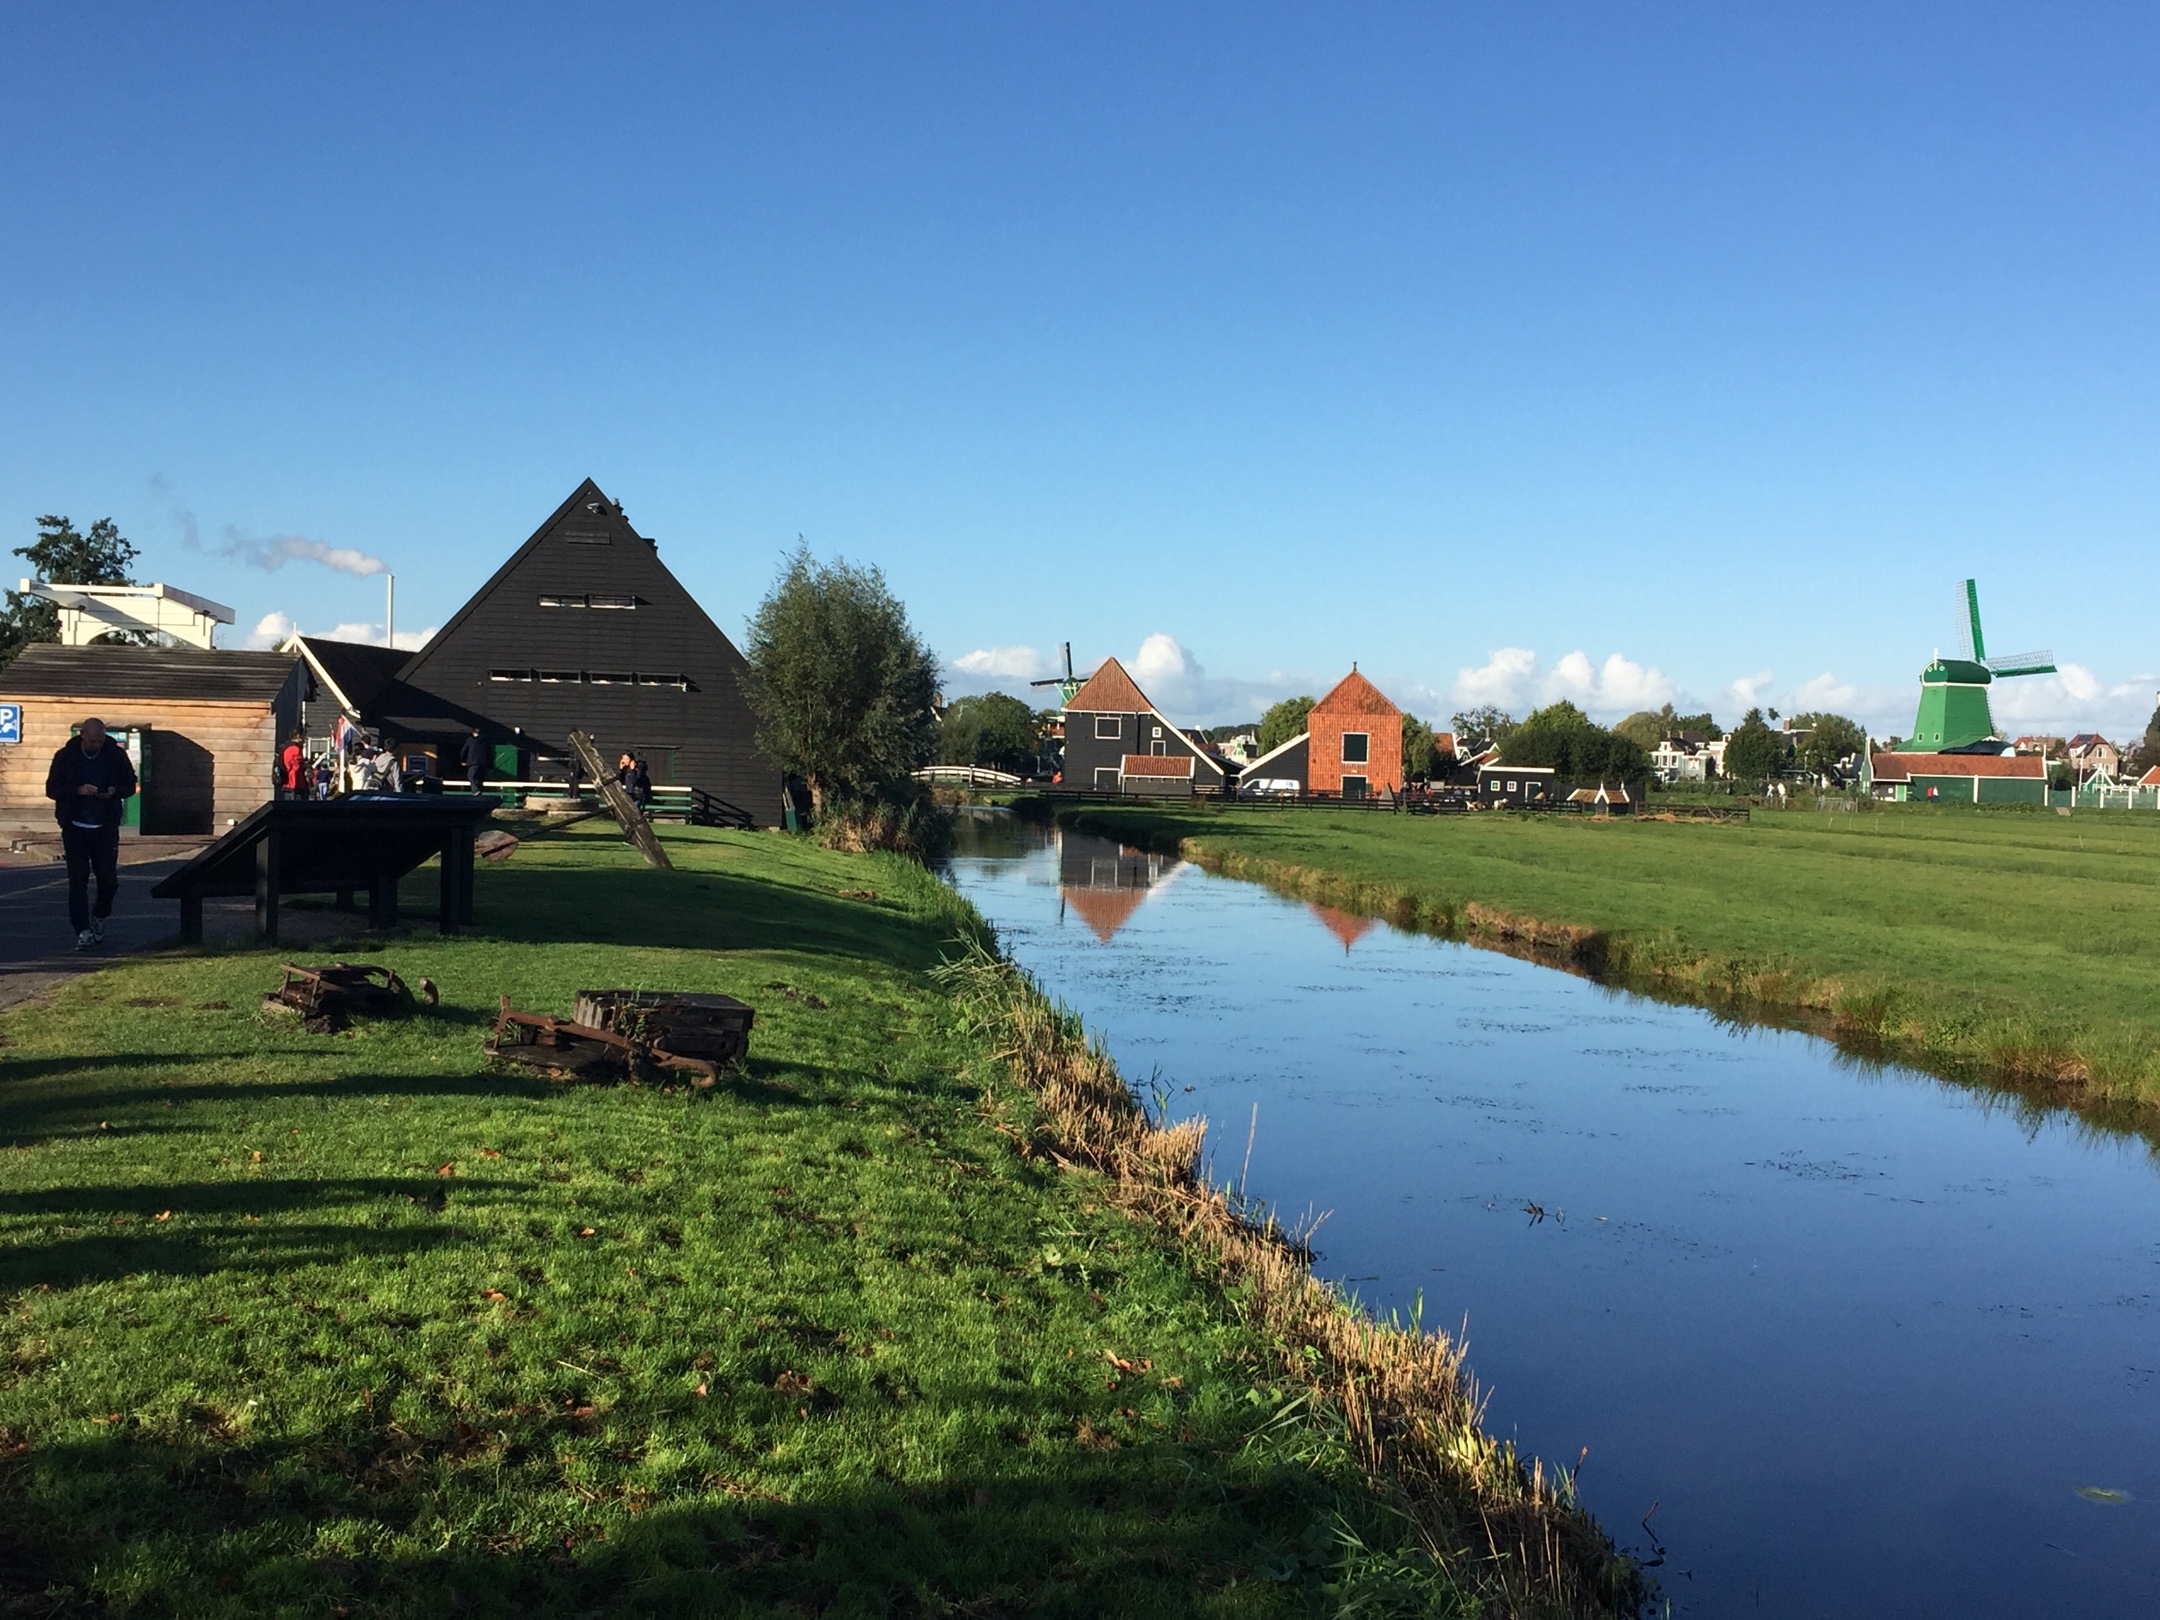 荷兰风情村图片